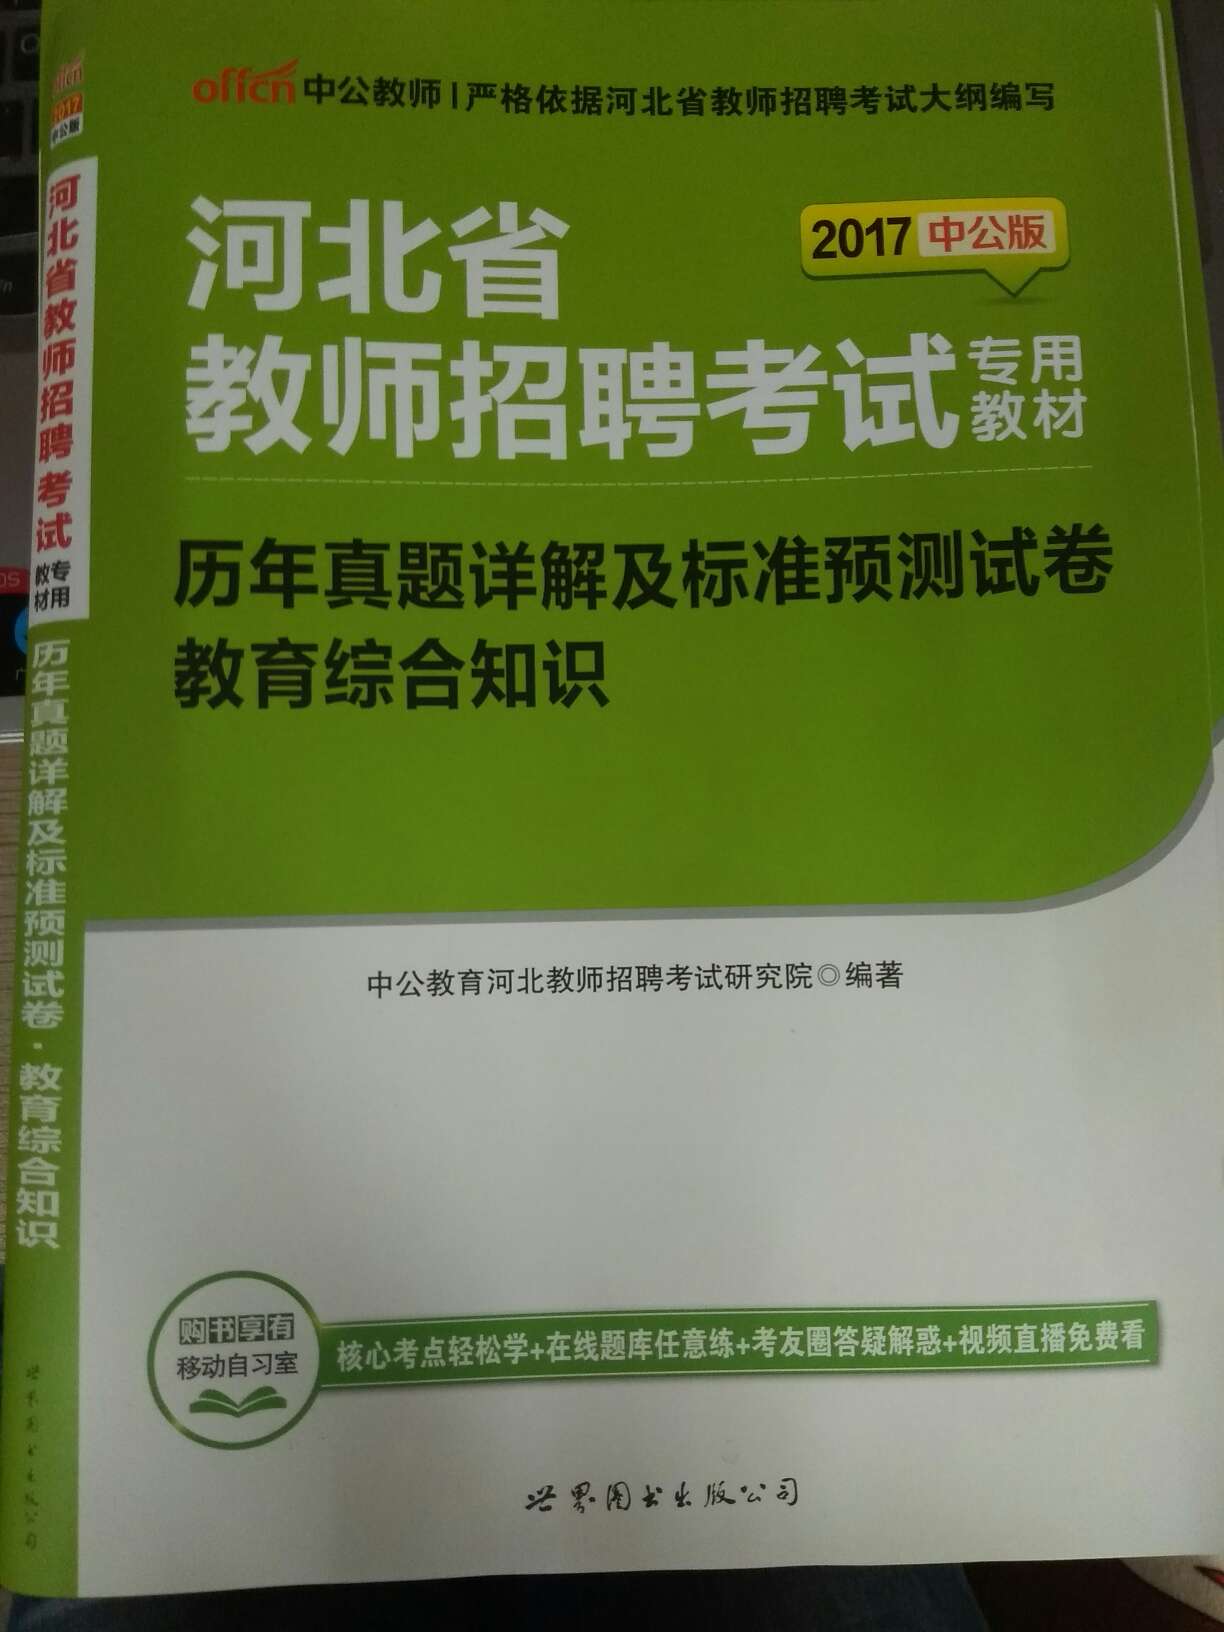 河北省教师招聘考试教育综合知识和历年真题，书很好用，知识点很全面，讲解详细透彻。